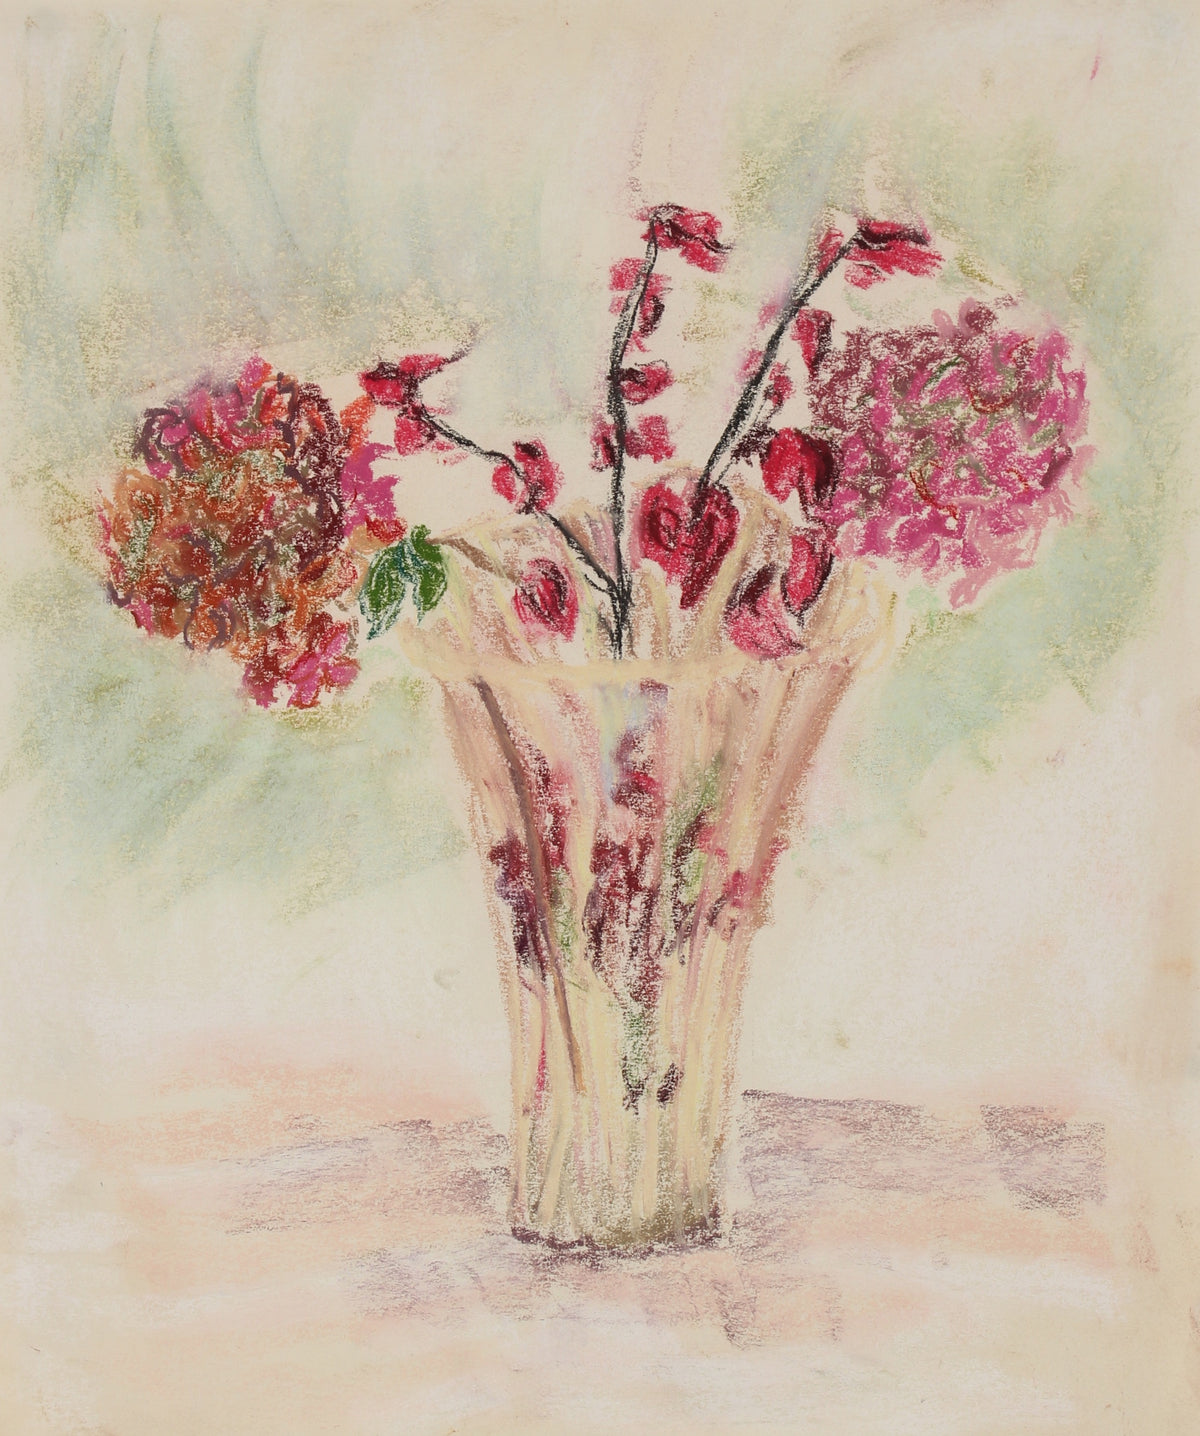 &lt;i&gt;Flowers in a Clear Vase&lt;/i&gt;&lt;br&gt;Pastel Still Life&lt;br&gt;&lt;br&gt;#89611